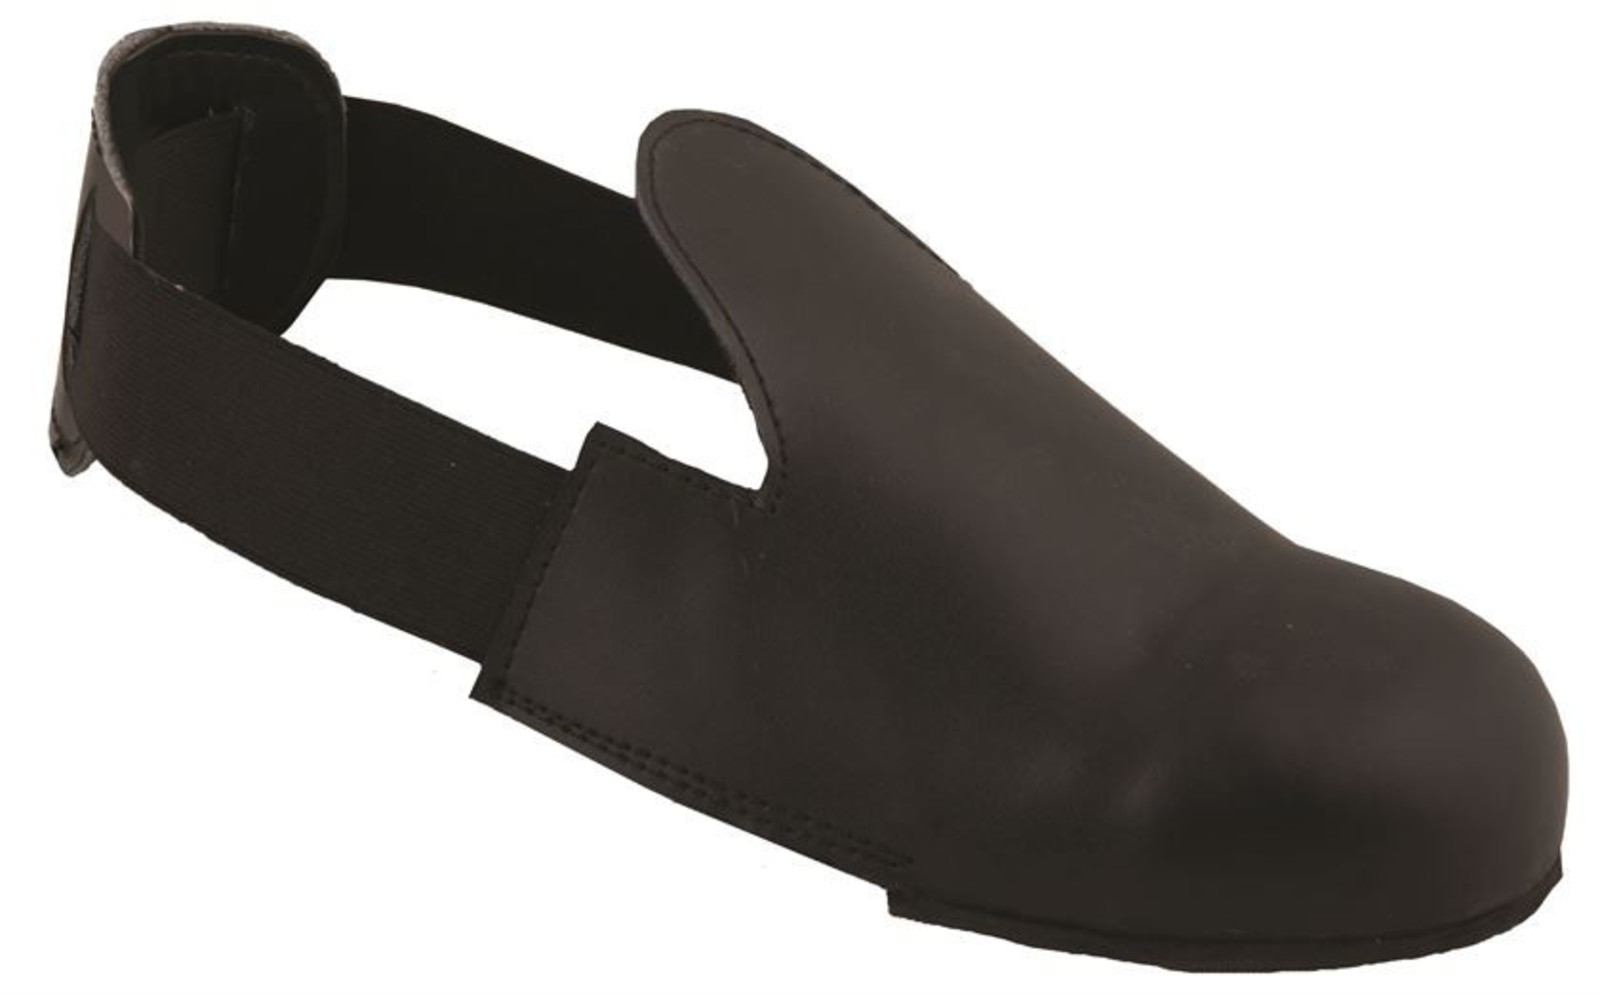 Bezpečnostné návleky na obuv Ardon Drum - veľkosť: 38-42, farba: čierna